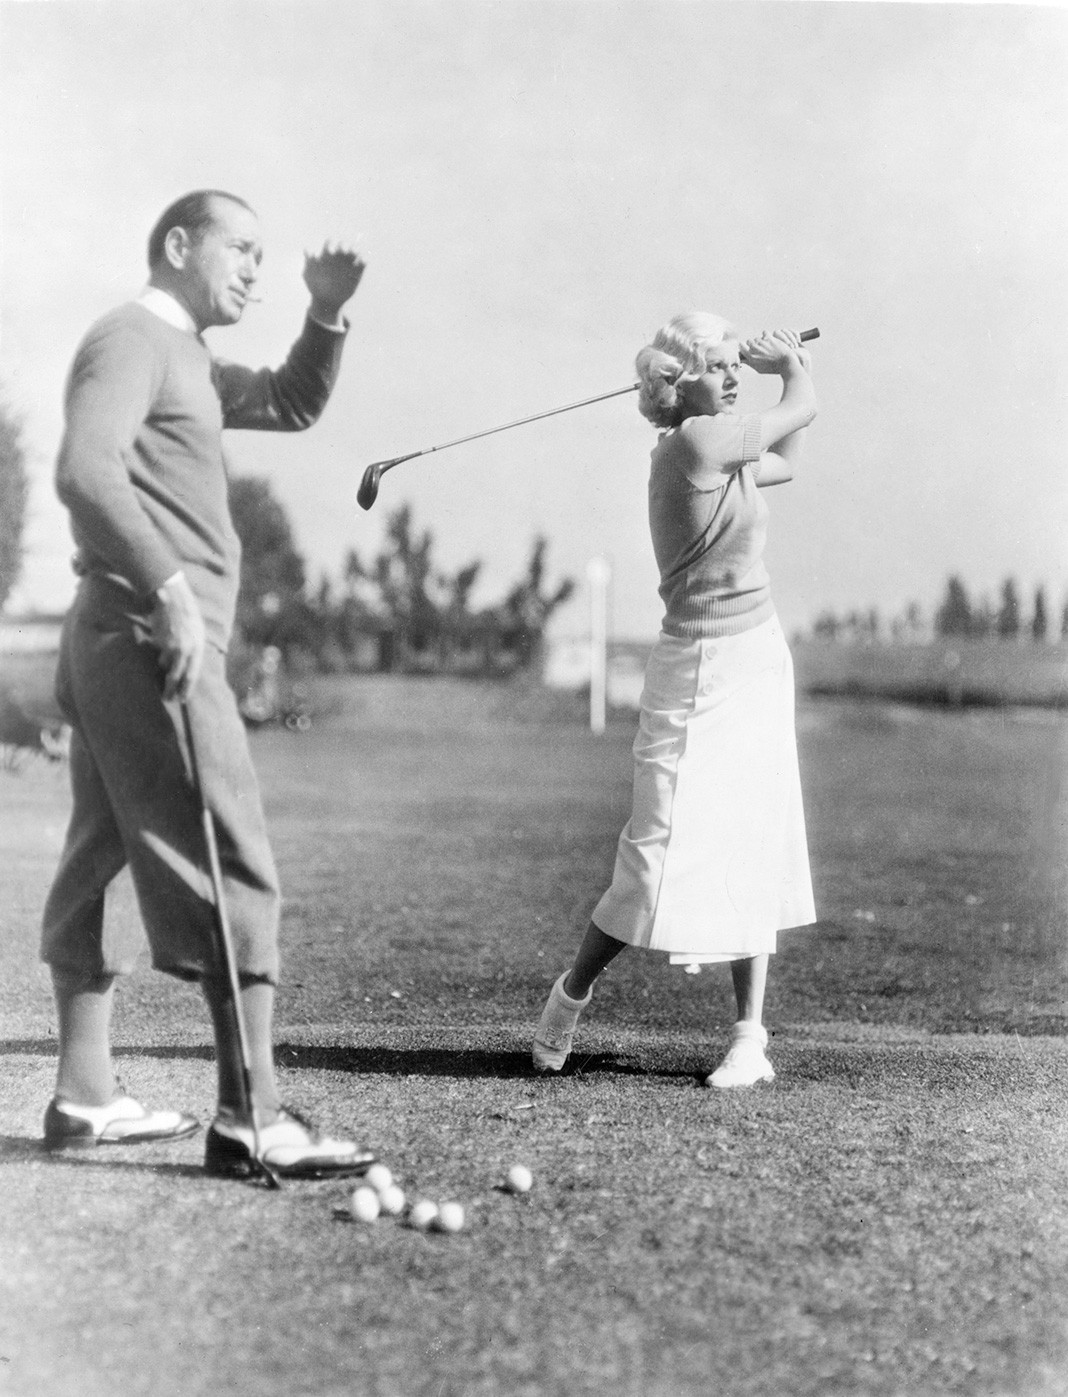 На уроке гольфа от профессионального гольфиста Лео Дигеля, примерно 1932 г.